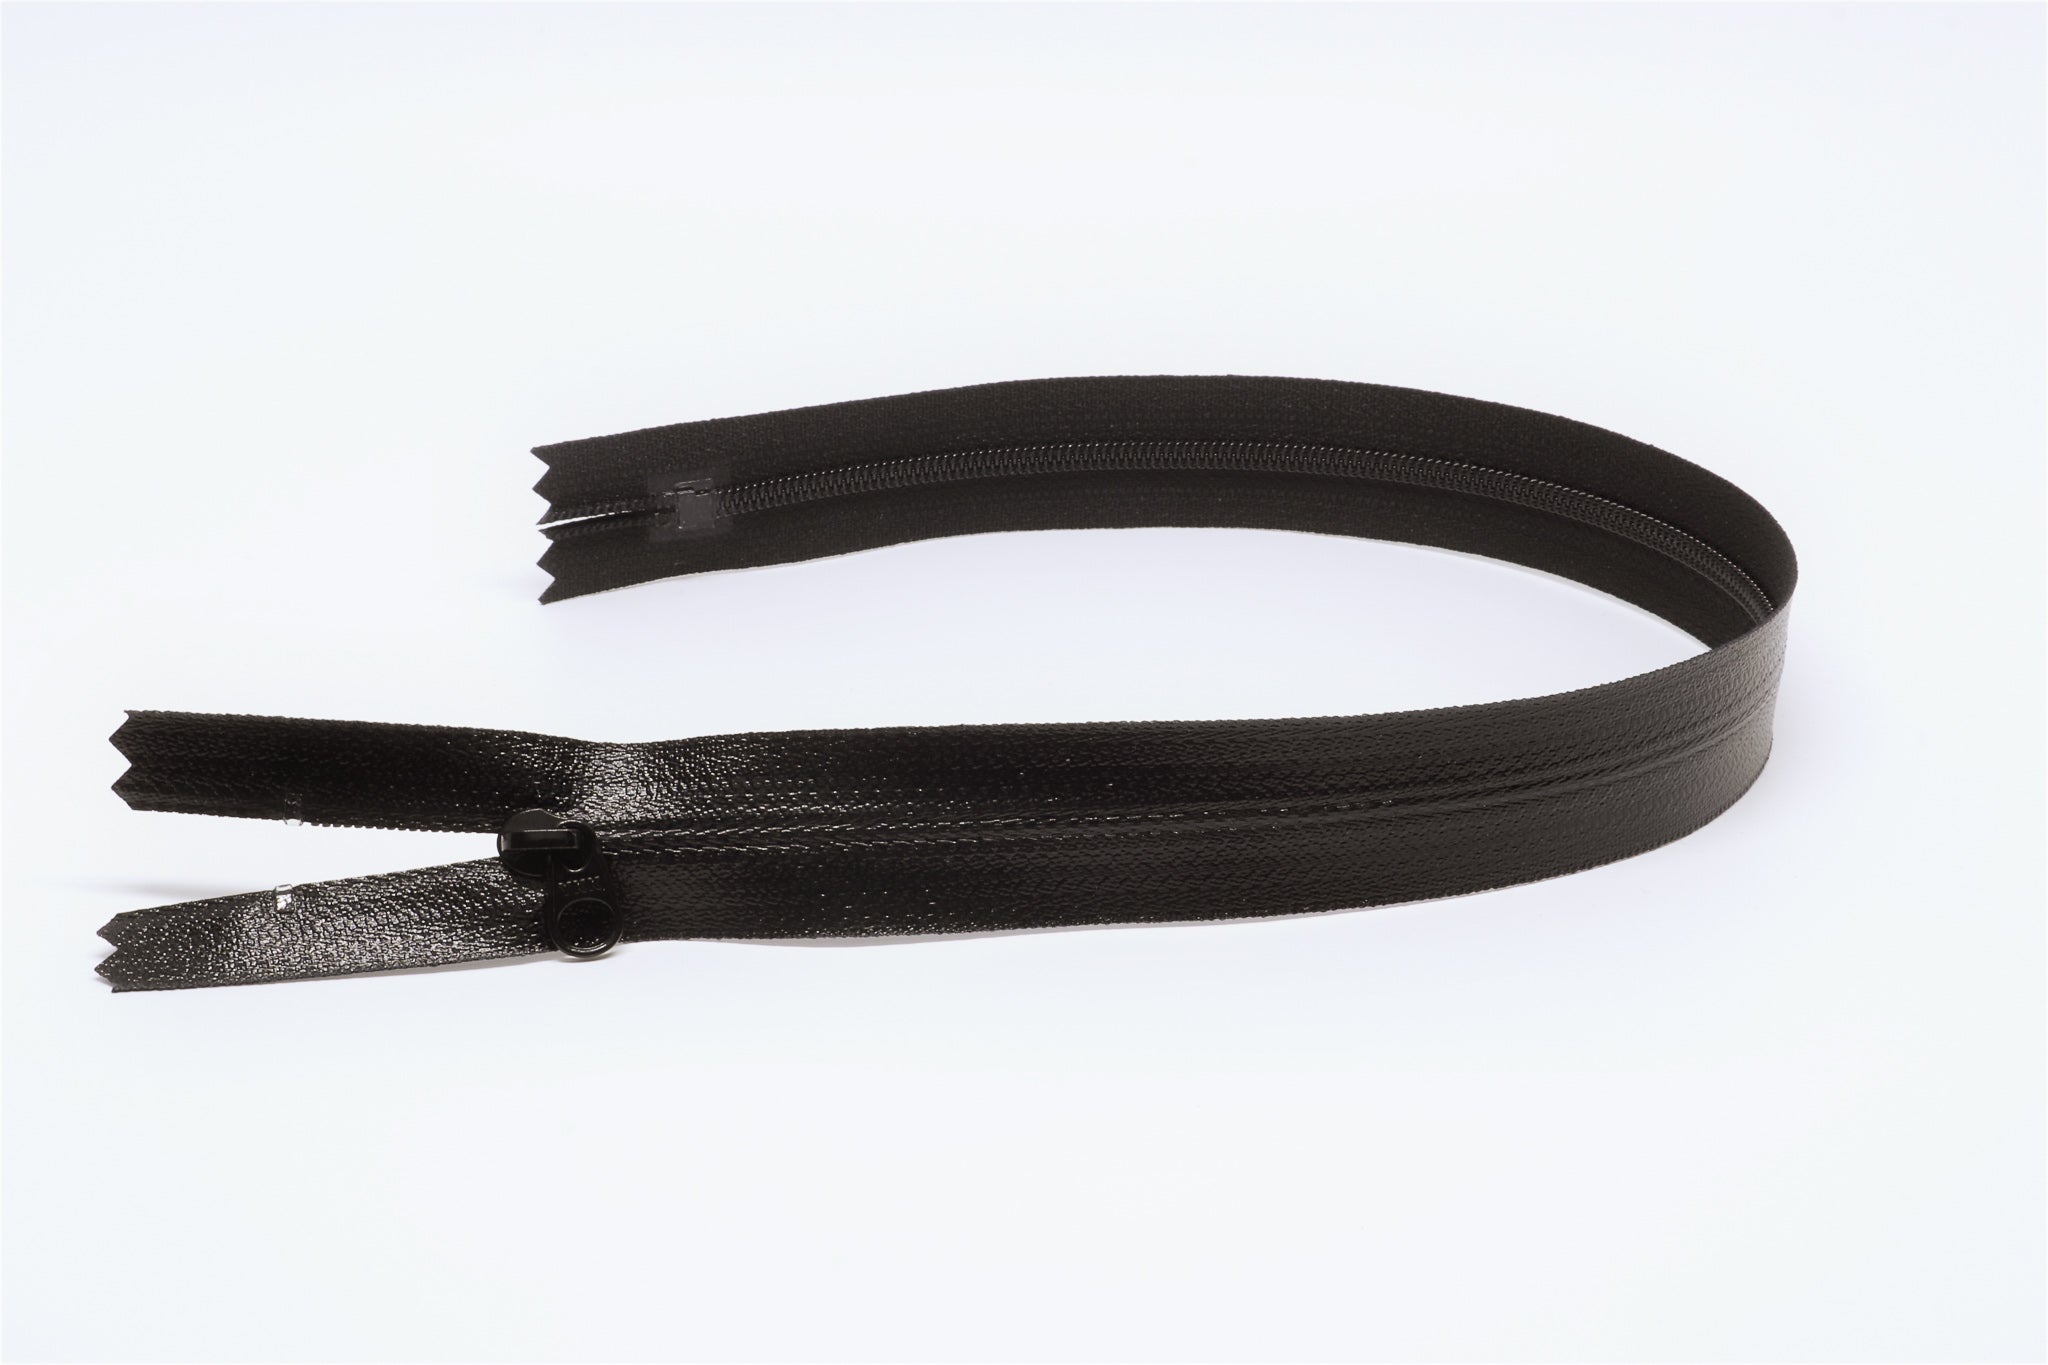 YKK #10 Coil Reverse Long Pull Non-Lock Slider - Black Oxide